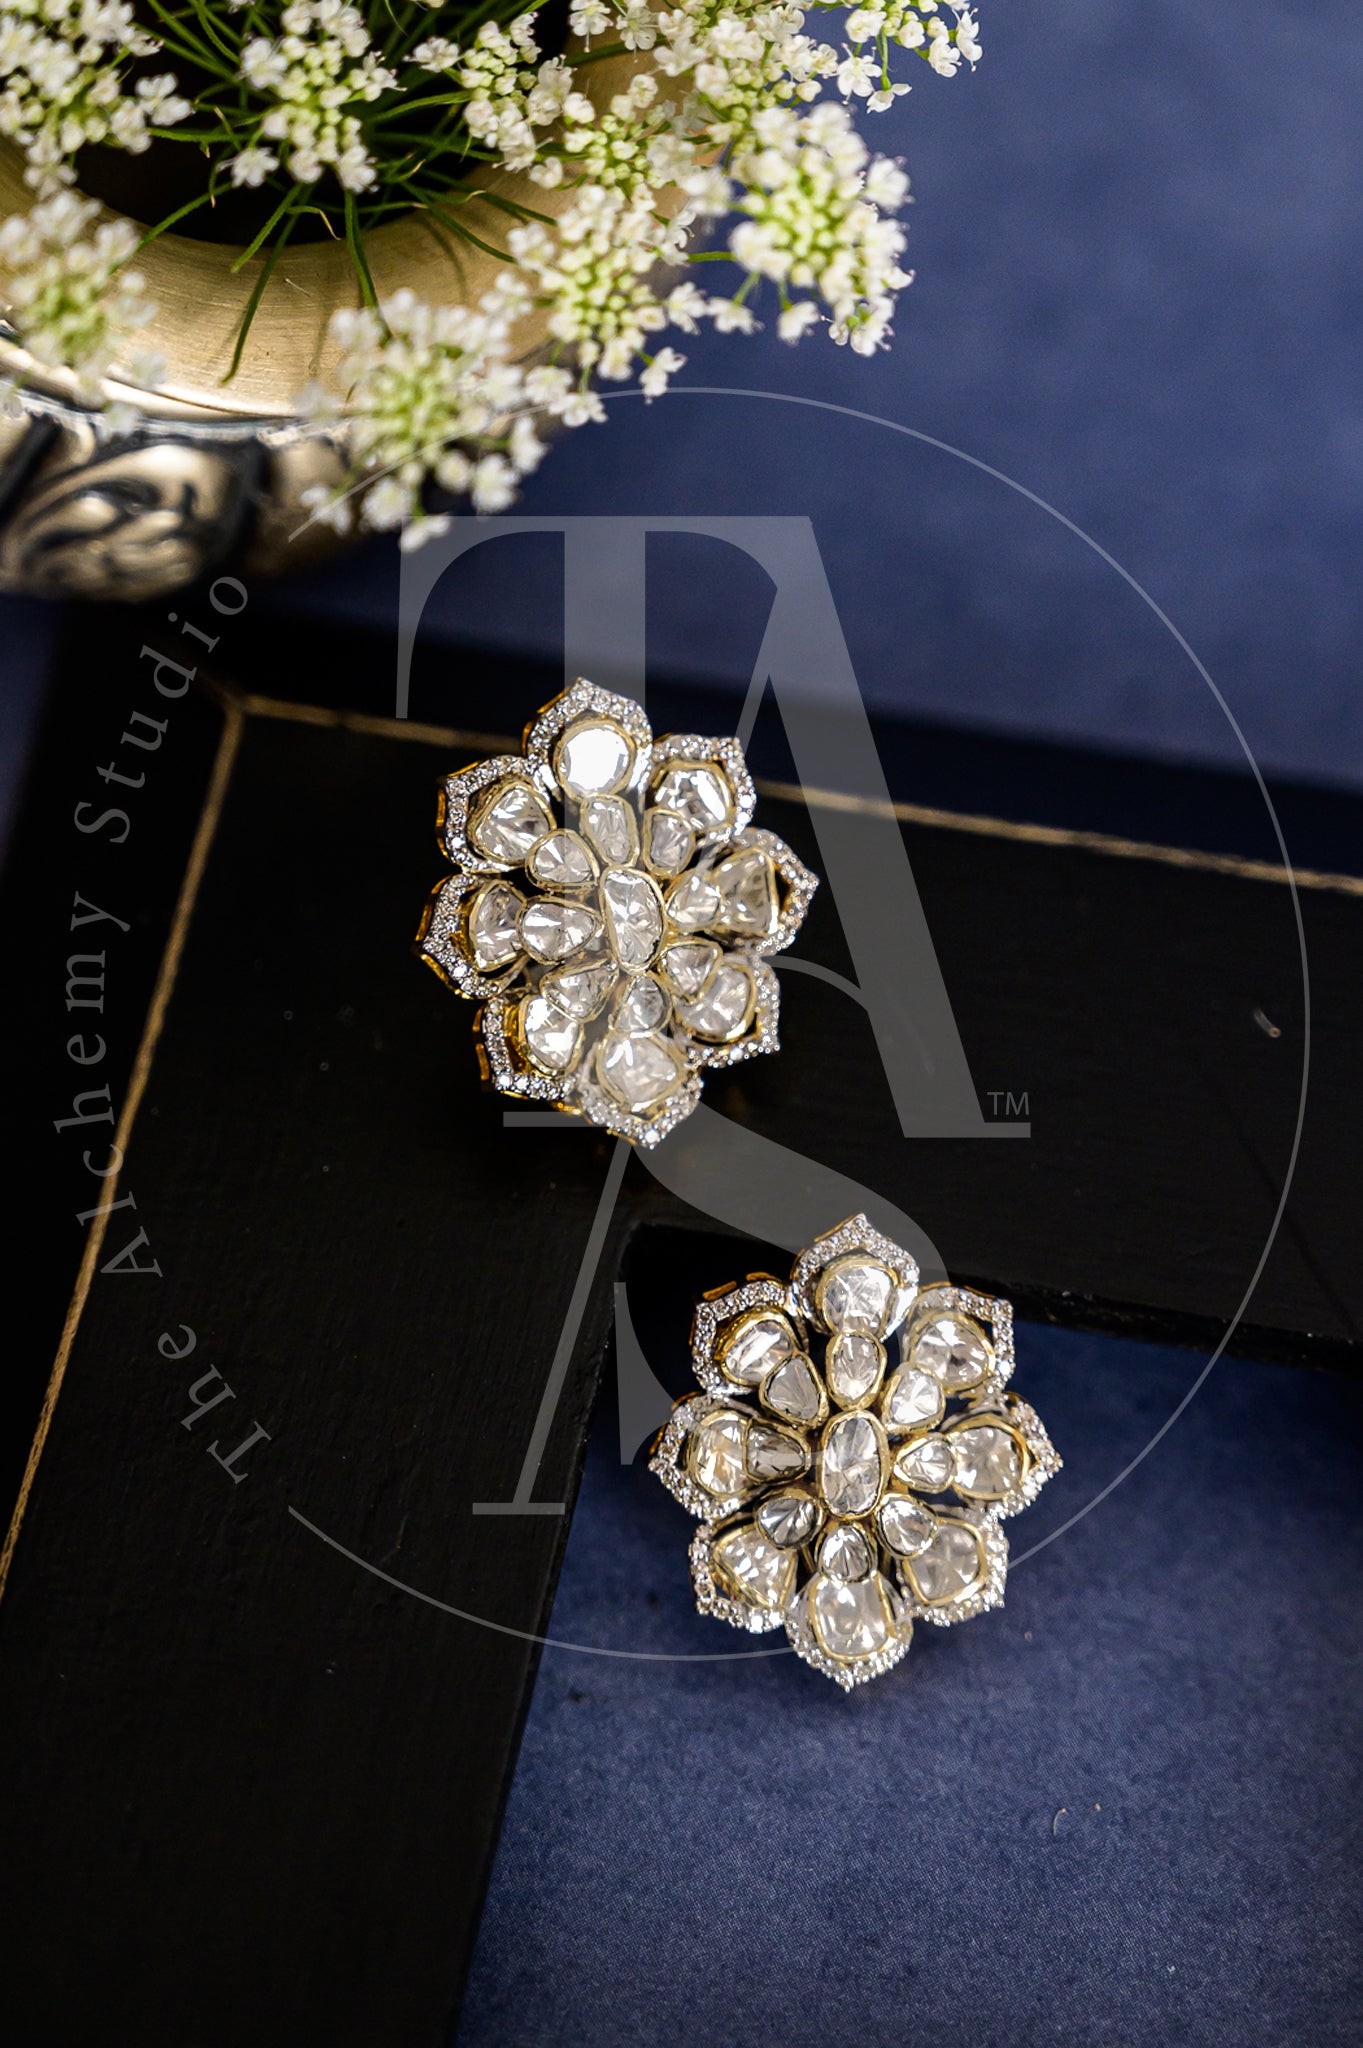 18kt Gold Zane Oval Uncut Diamond and Diamond Flower Earrings